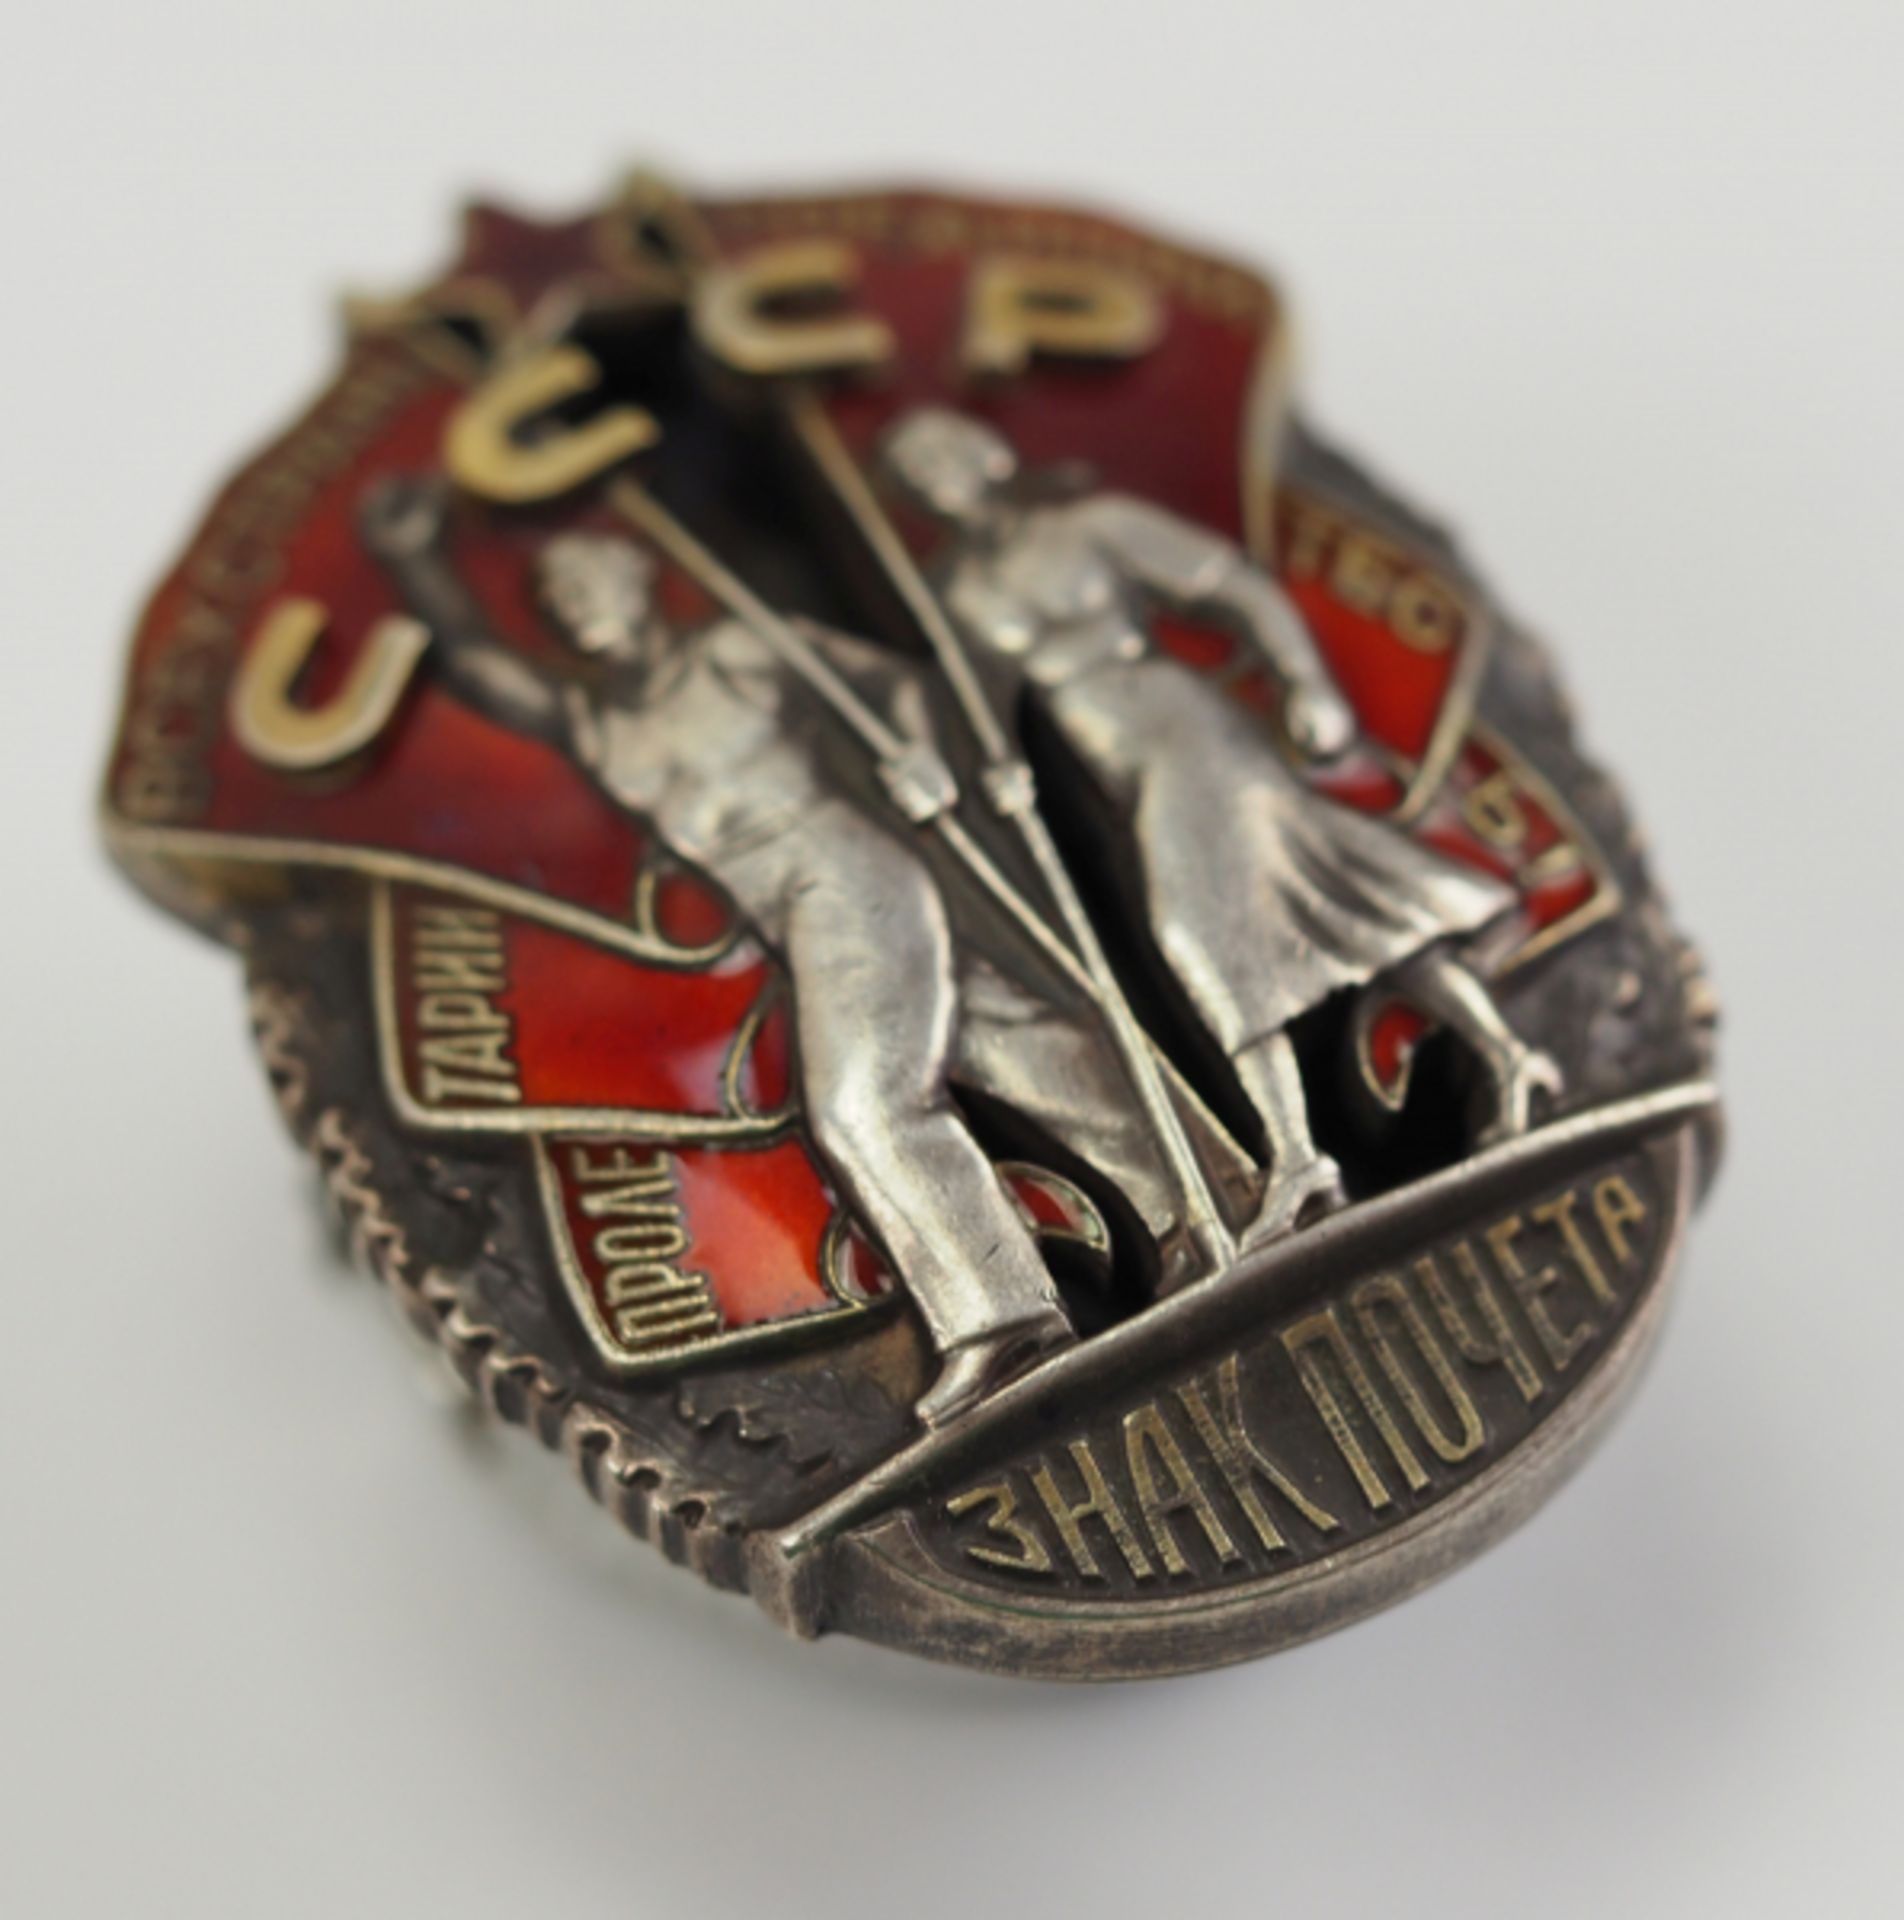 Sowjetunion: Orden "Zeichen der Ehre", 1. Modell.Silber, teilweise vergoldet und emailliert, - Bild 2 aus 3